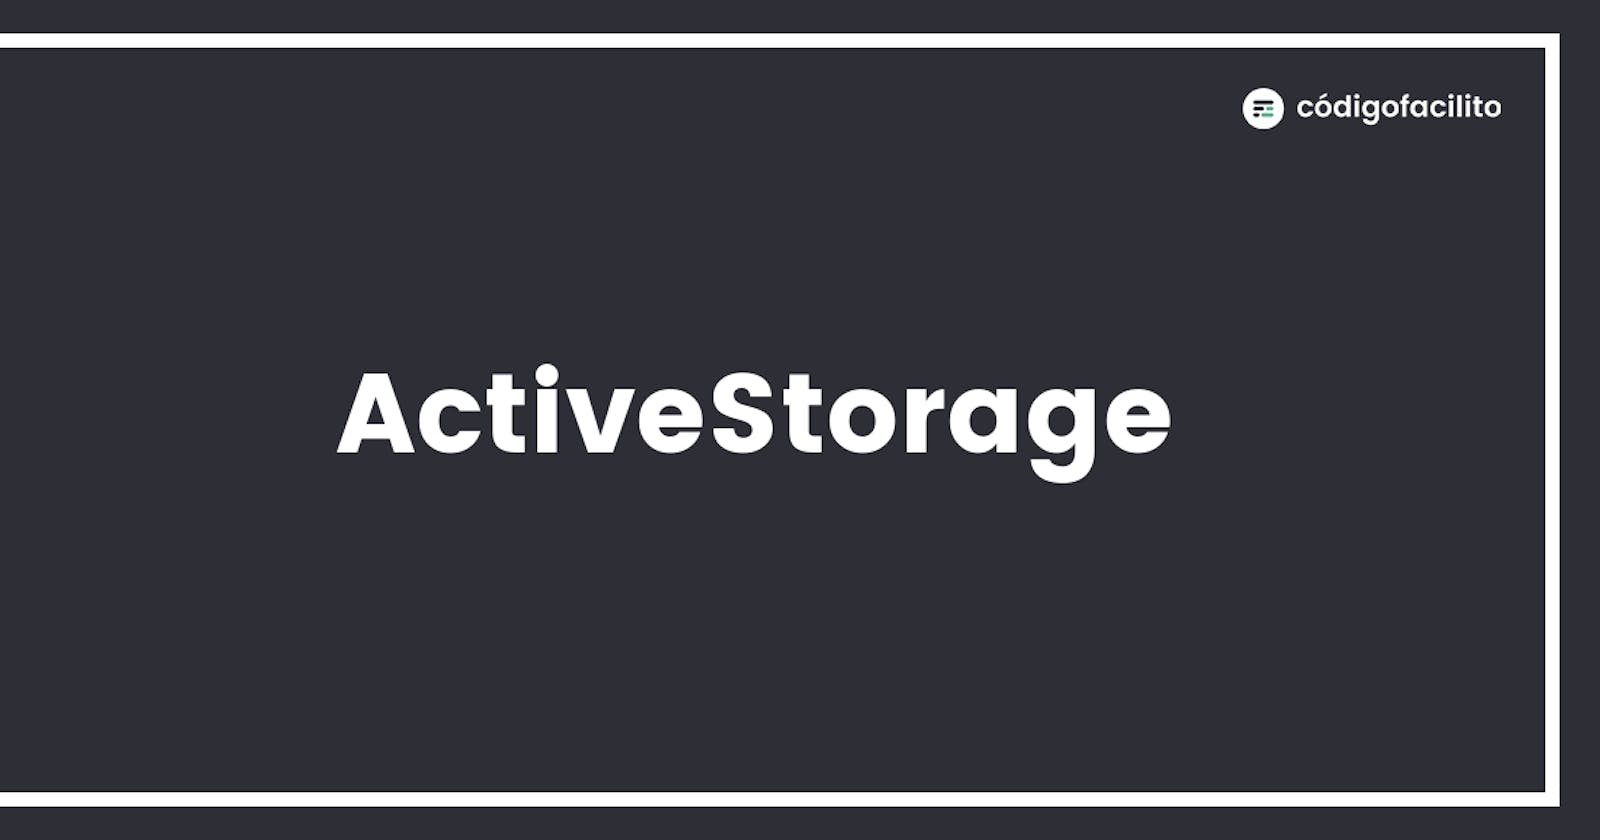 Active Storage - Como activarlo y usarlo